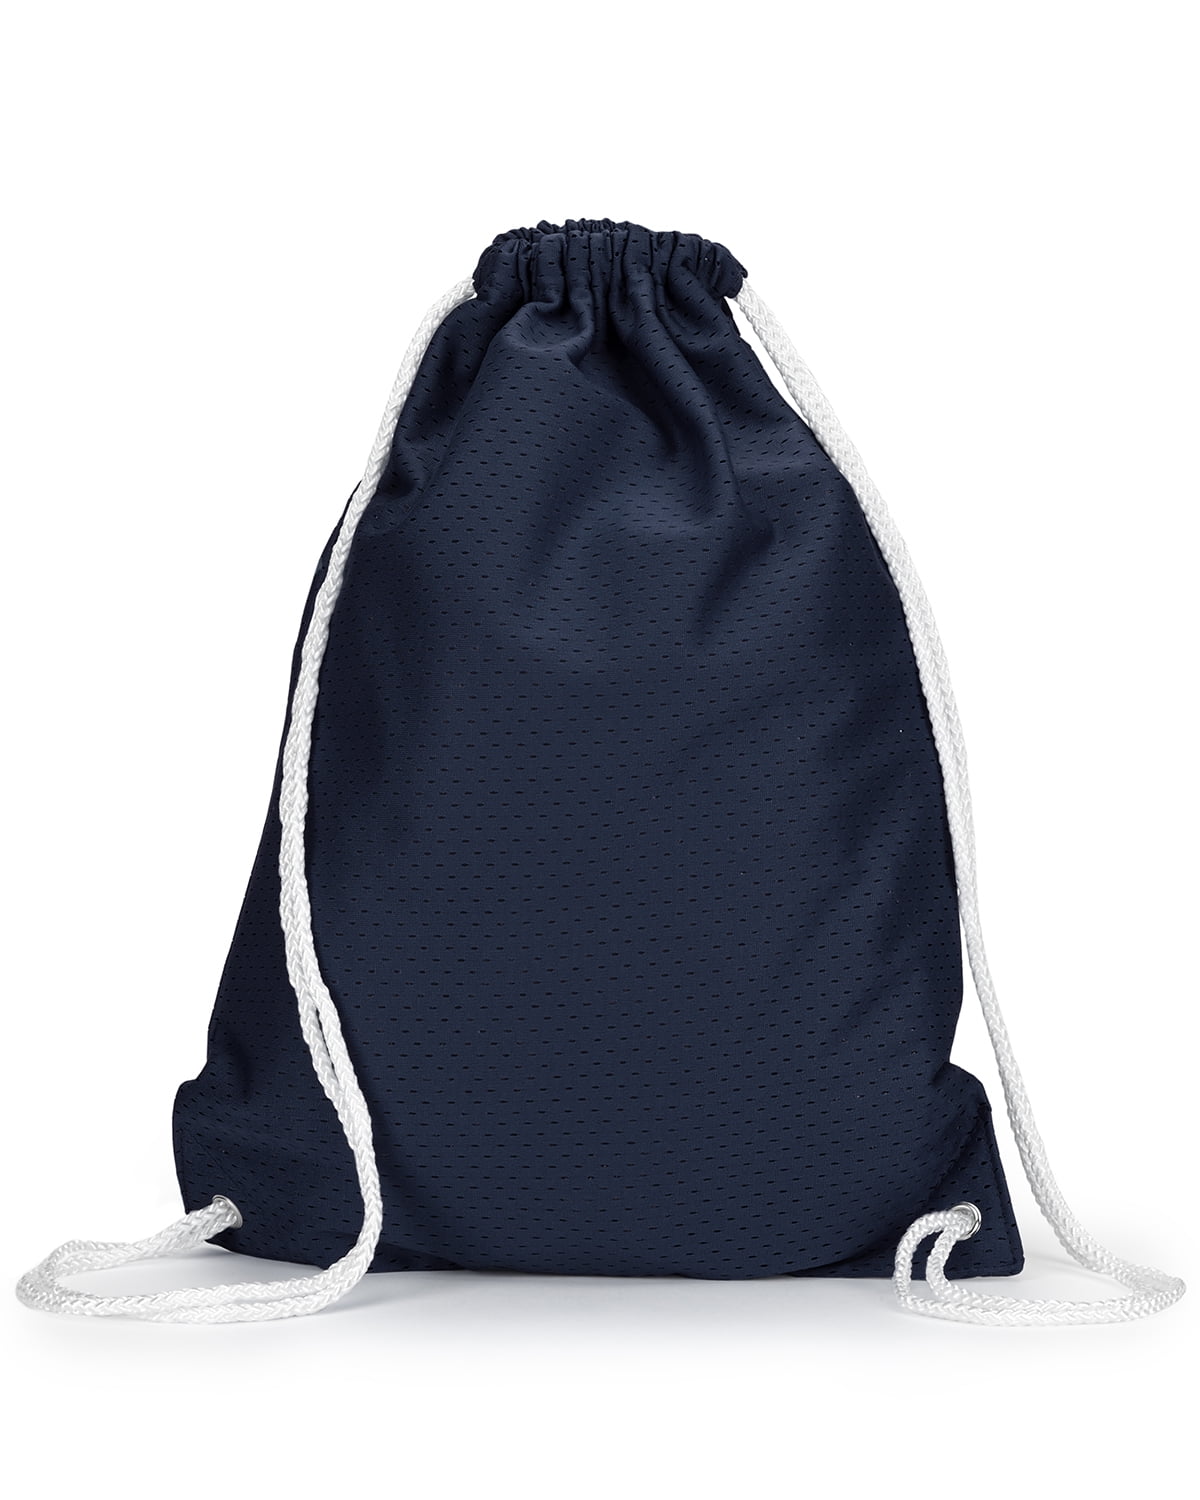 GymSack Drawstring Bag Sackpack Banana Sport Cinch Pack Simple Bundle Pocke Backpack For Men Women